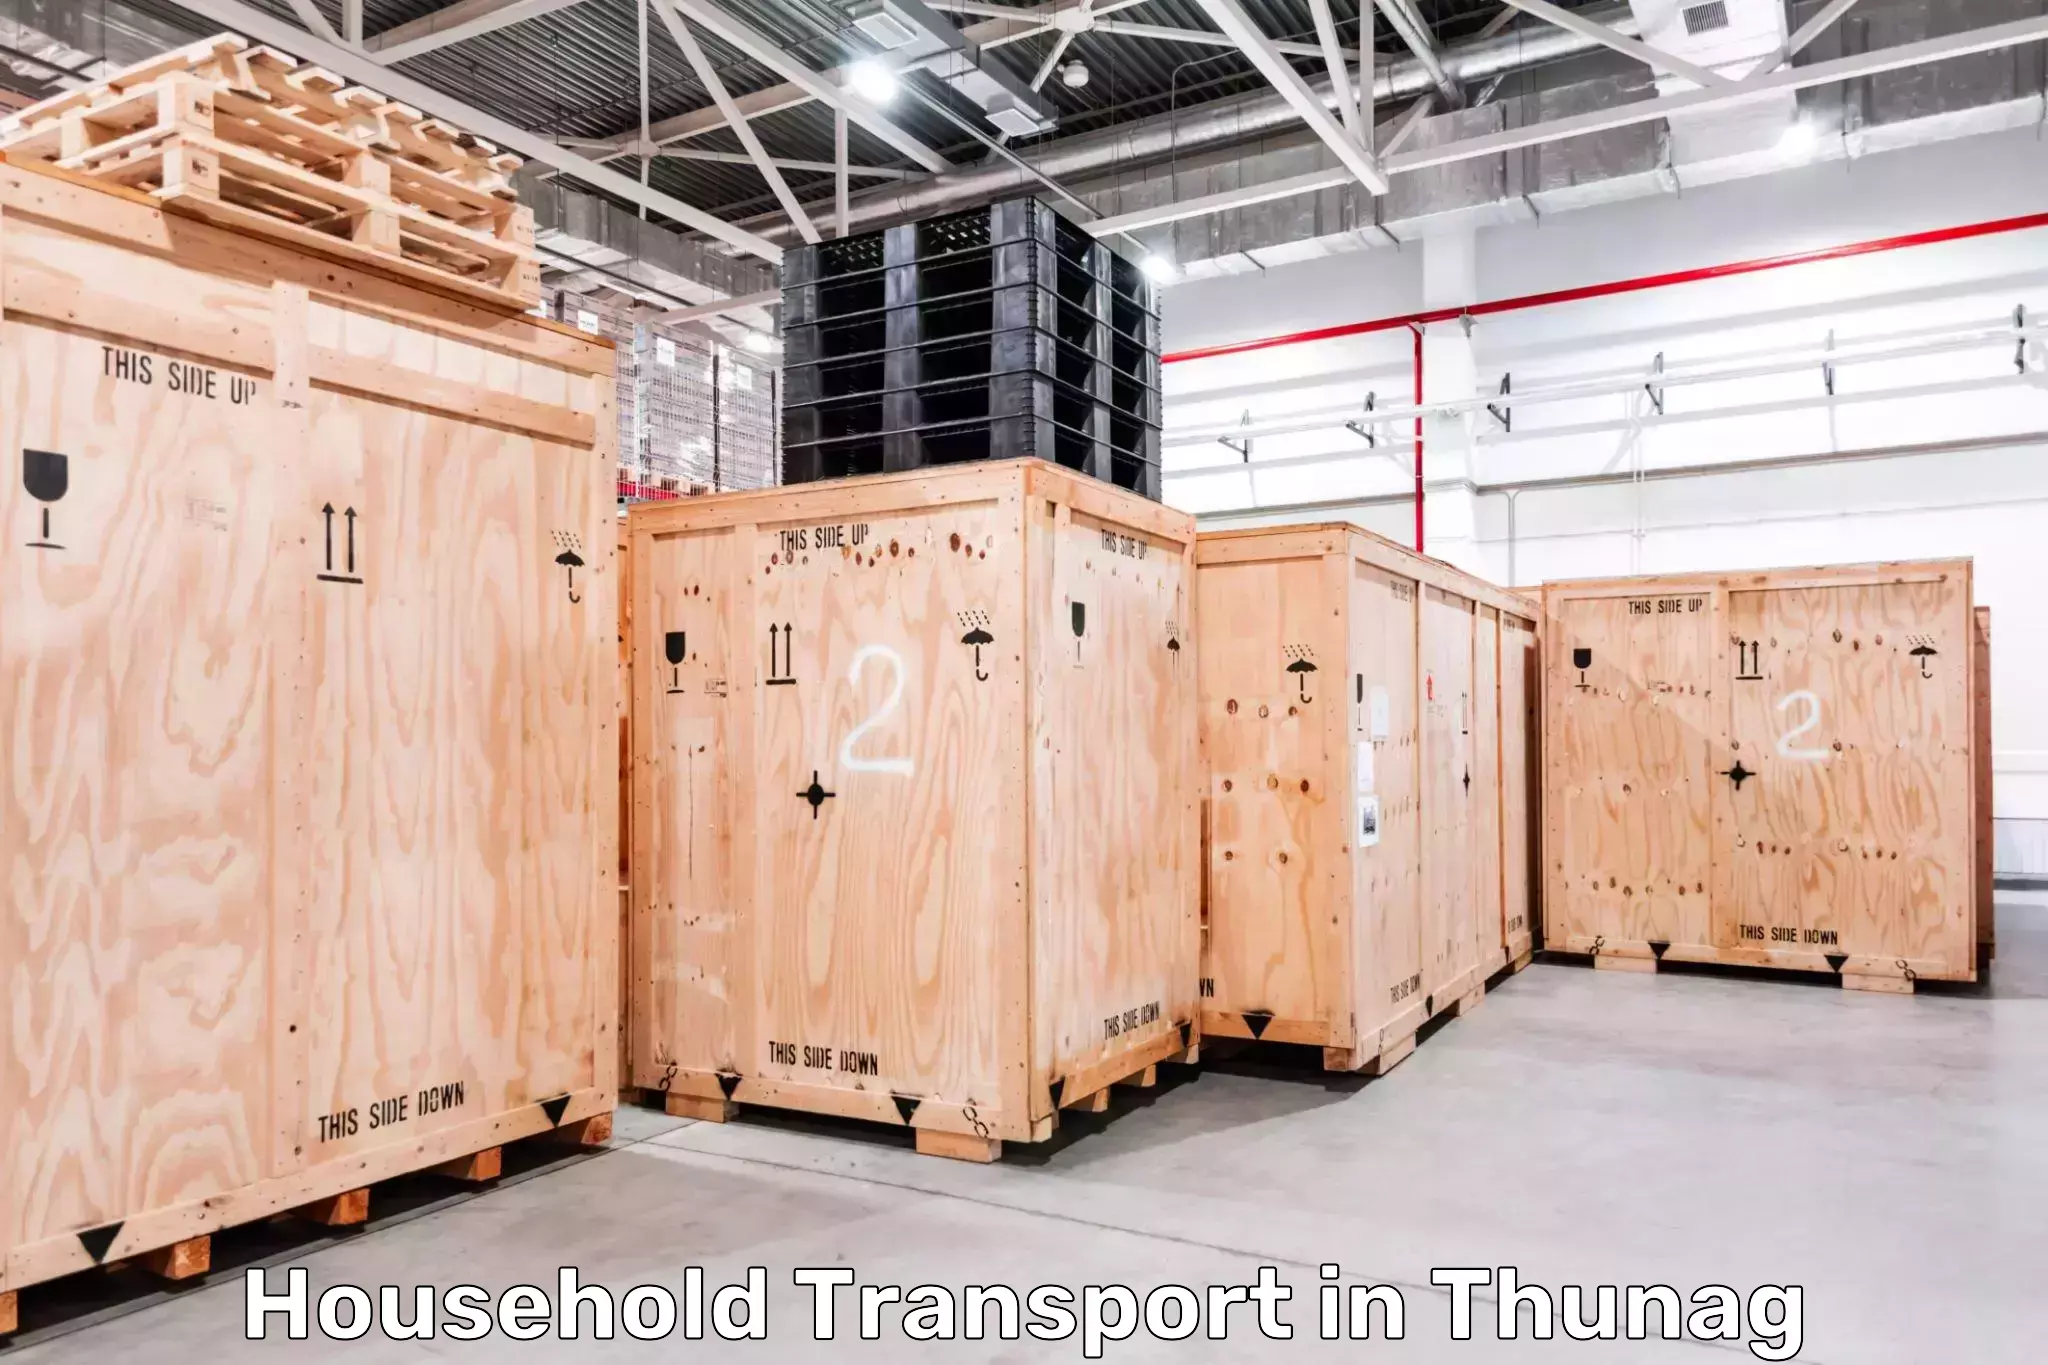 Household goods transport in Thunag